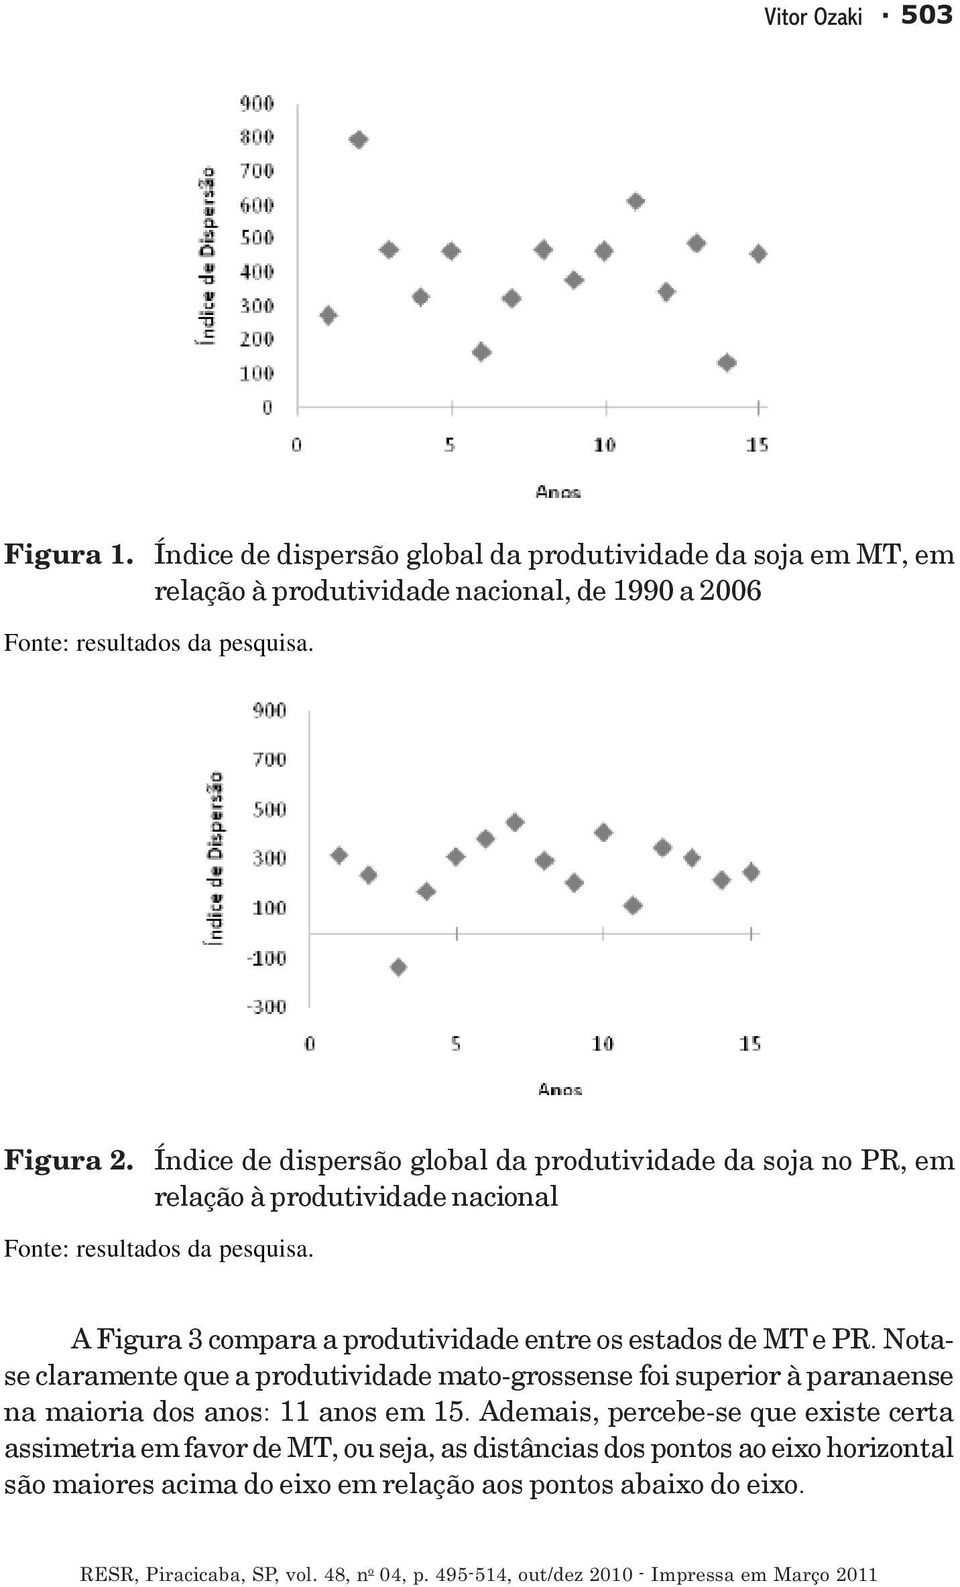 Índice de dispersão global da produtividade da soja no PR, em relação à produtividade nacional Fonte: resultados da pesquisa.